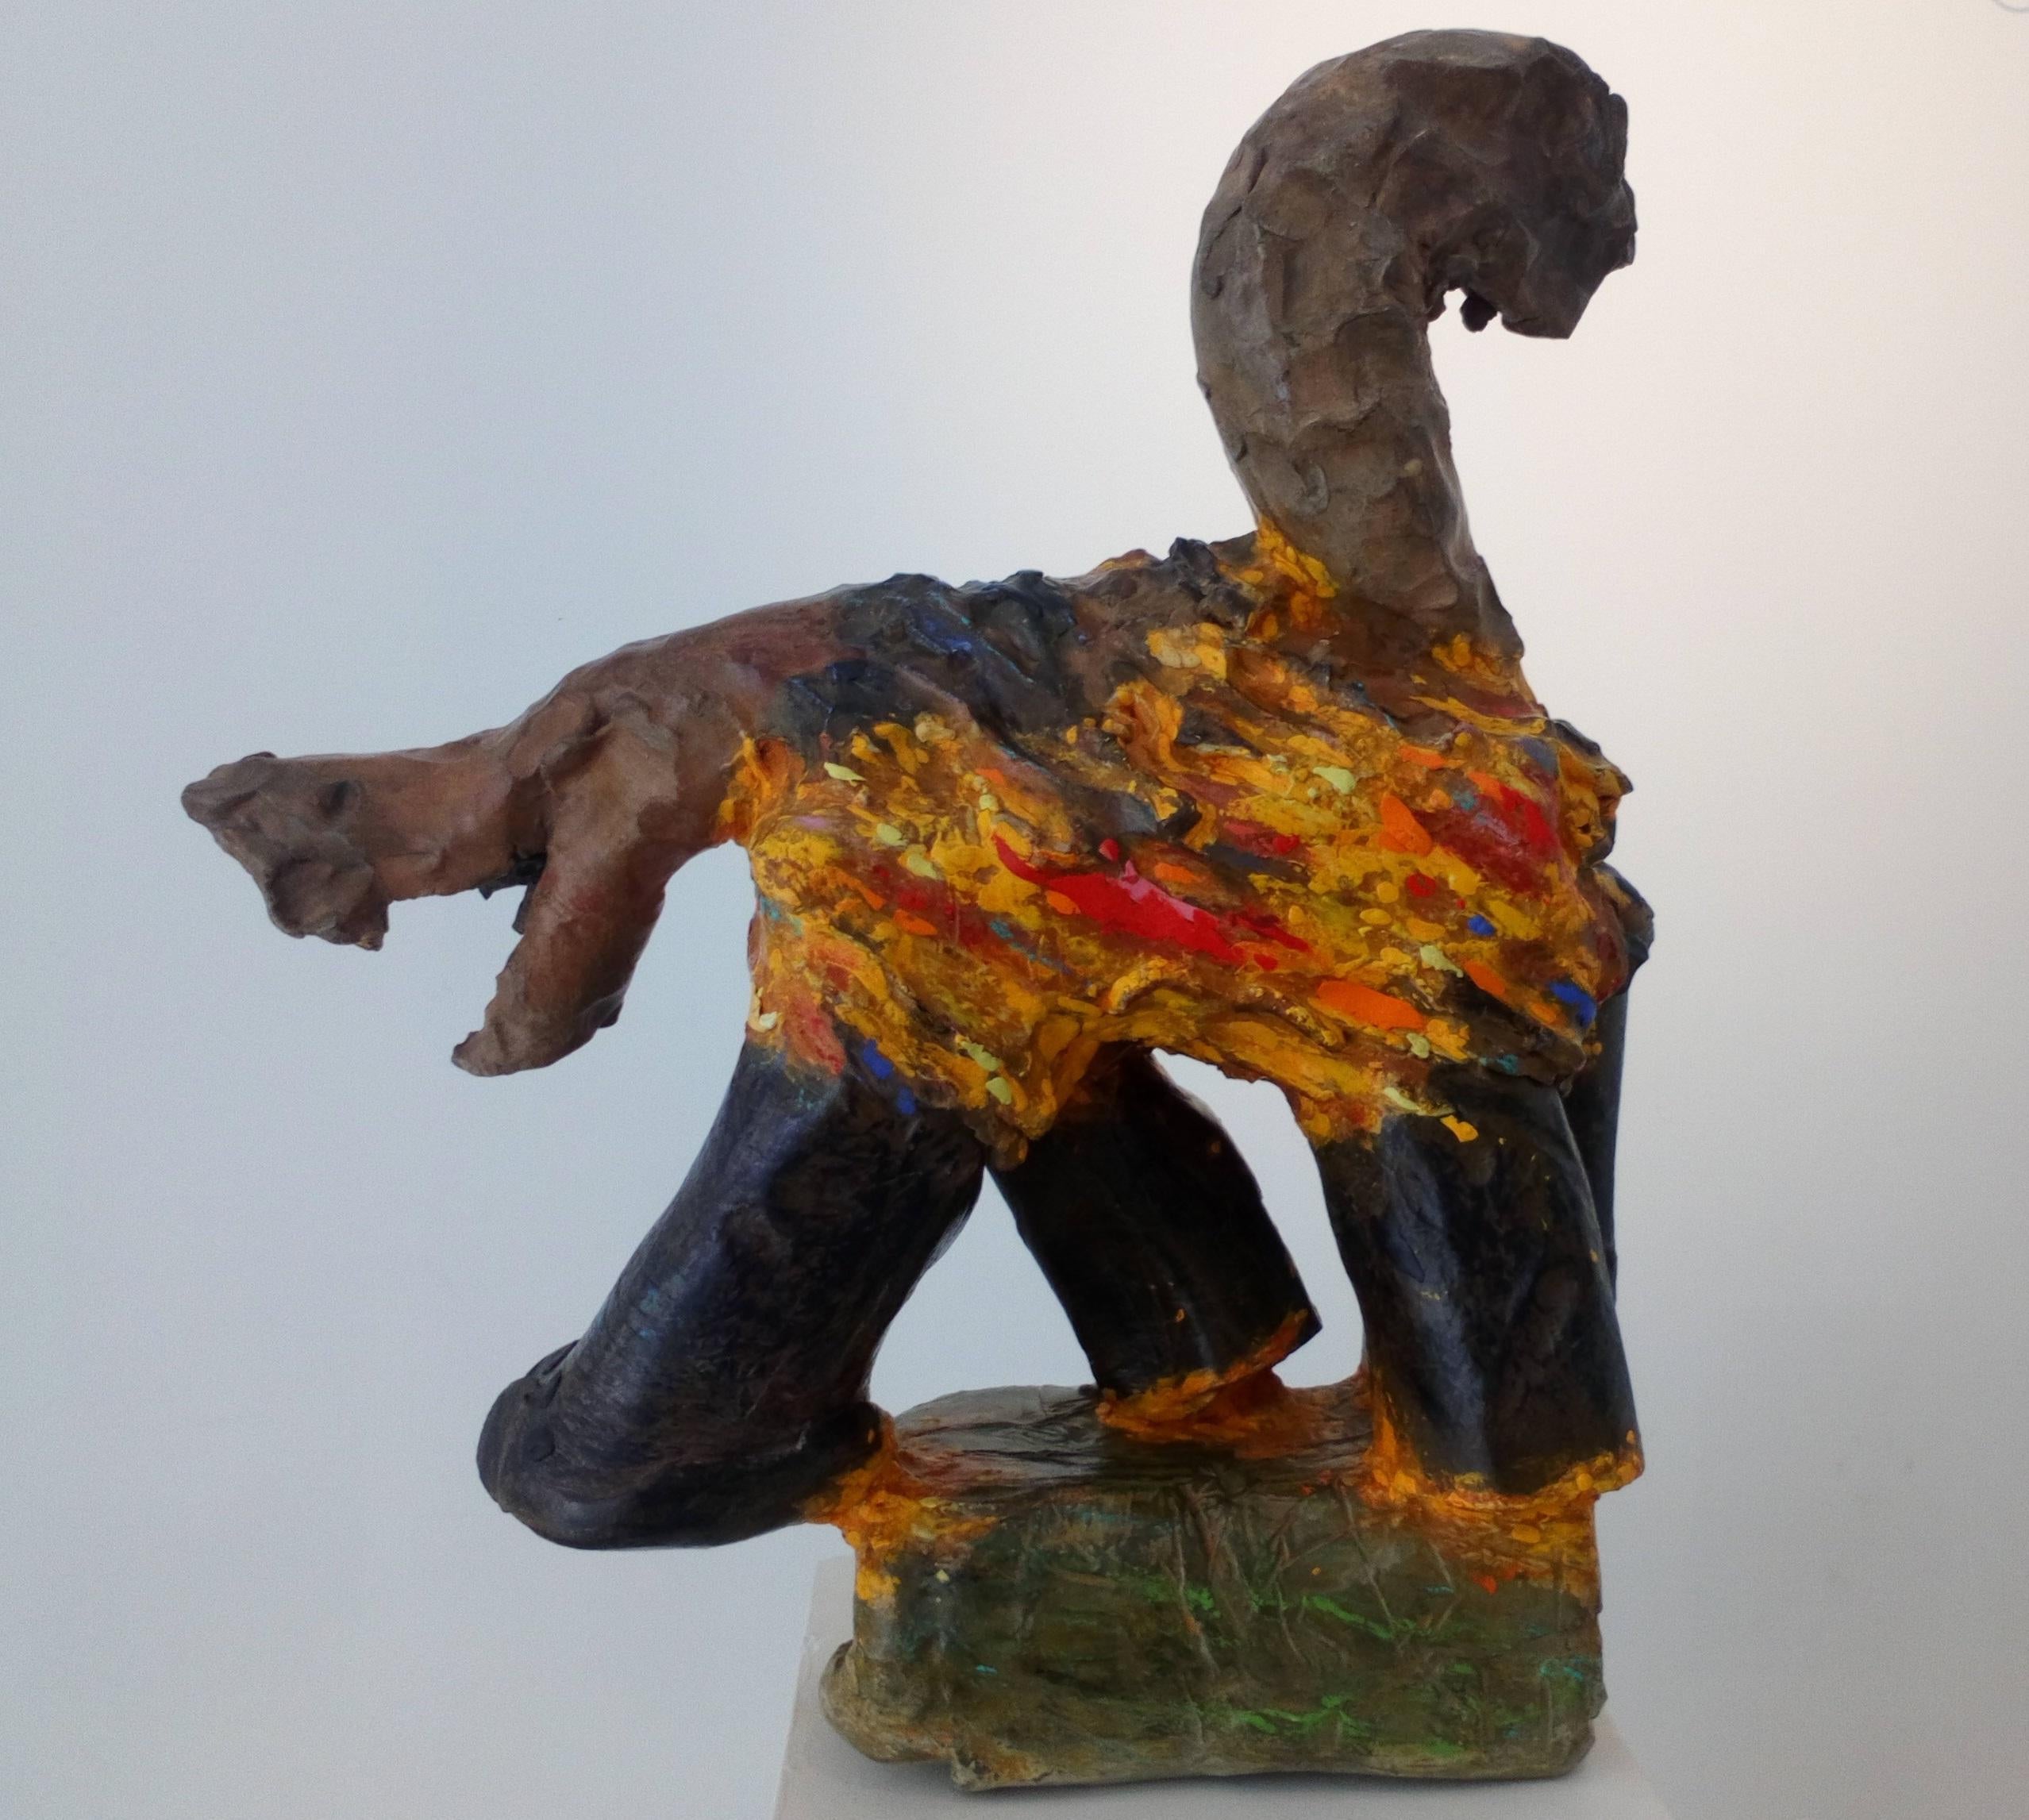 Crépuscule (Carcajou) Nicolas Kennett Sculpture contemporaine animal terre cuite 